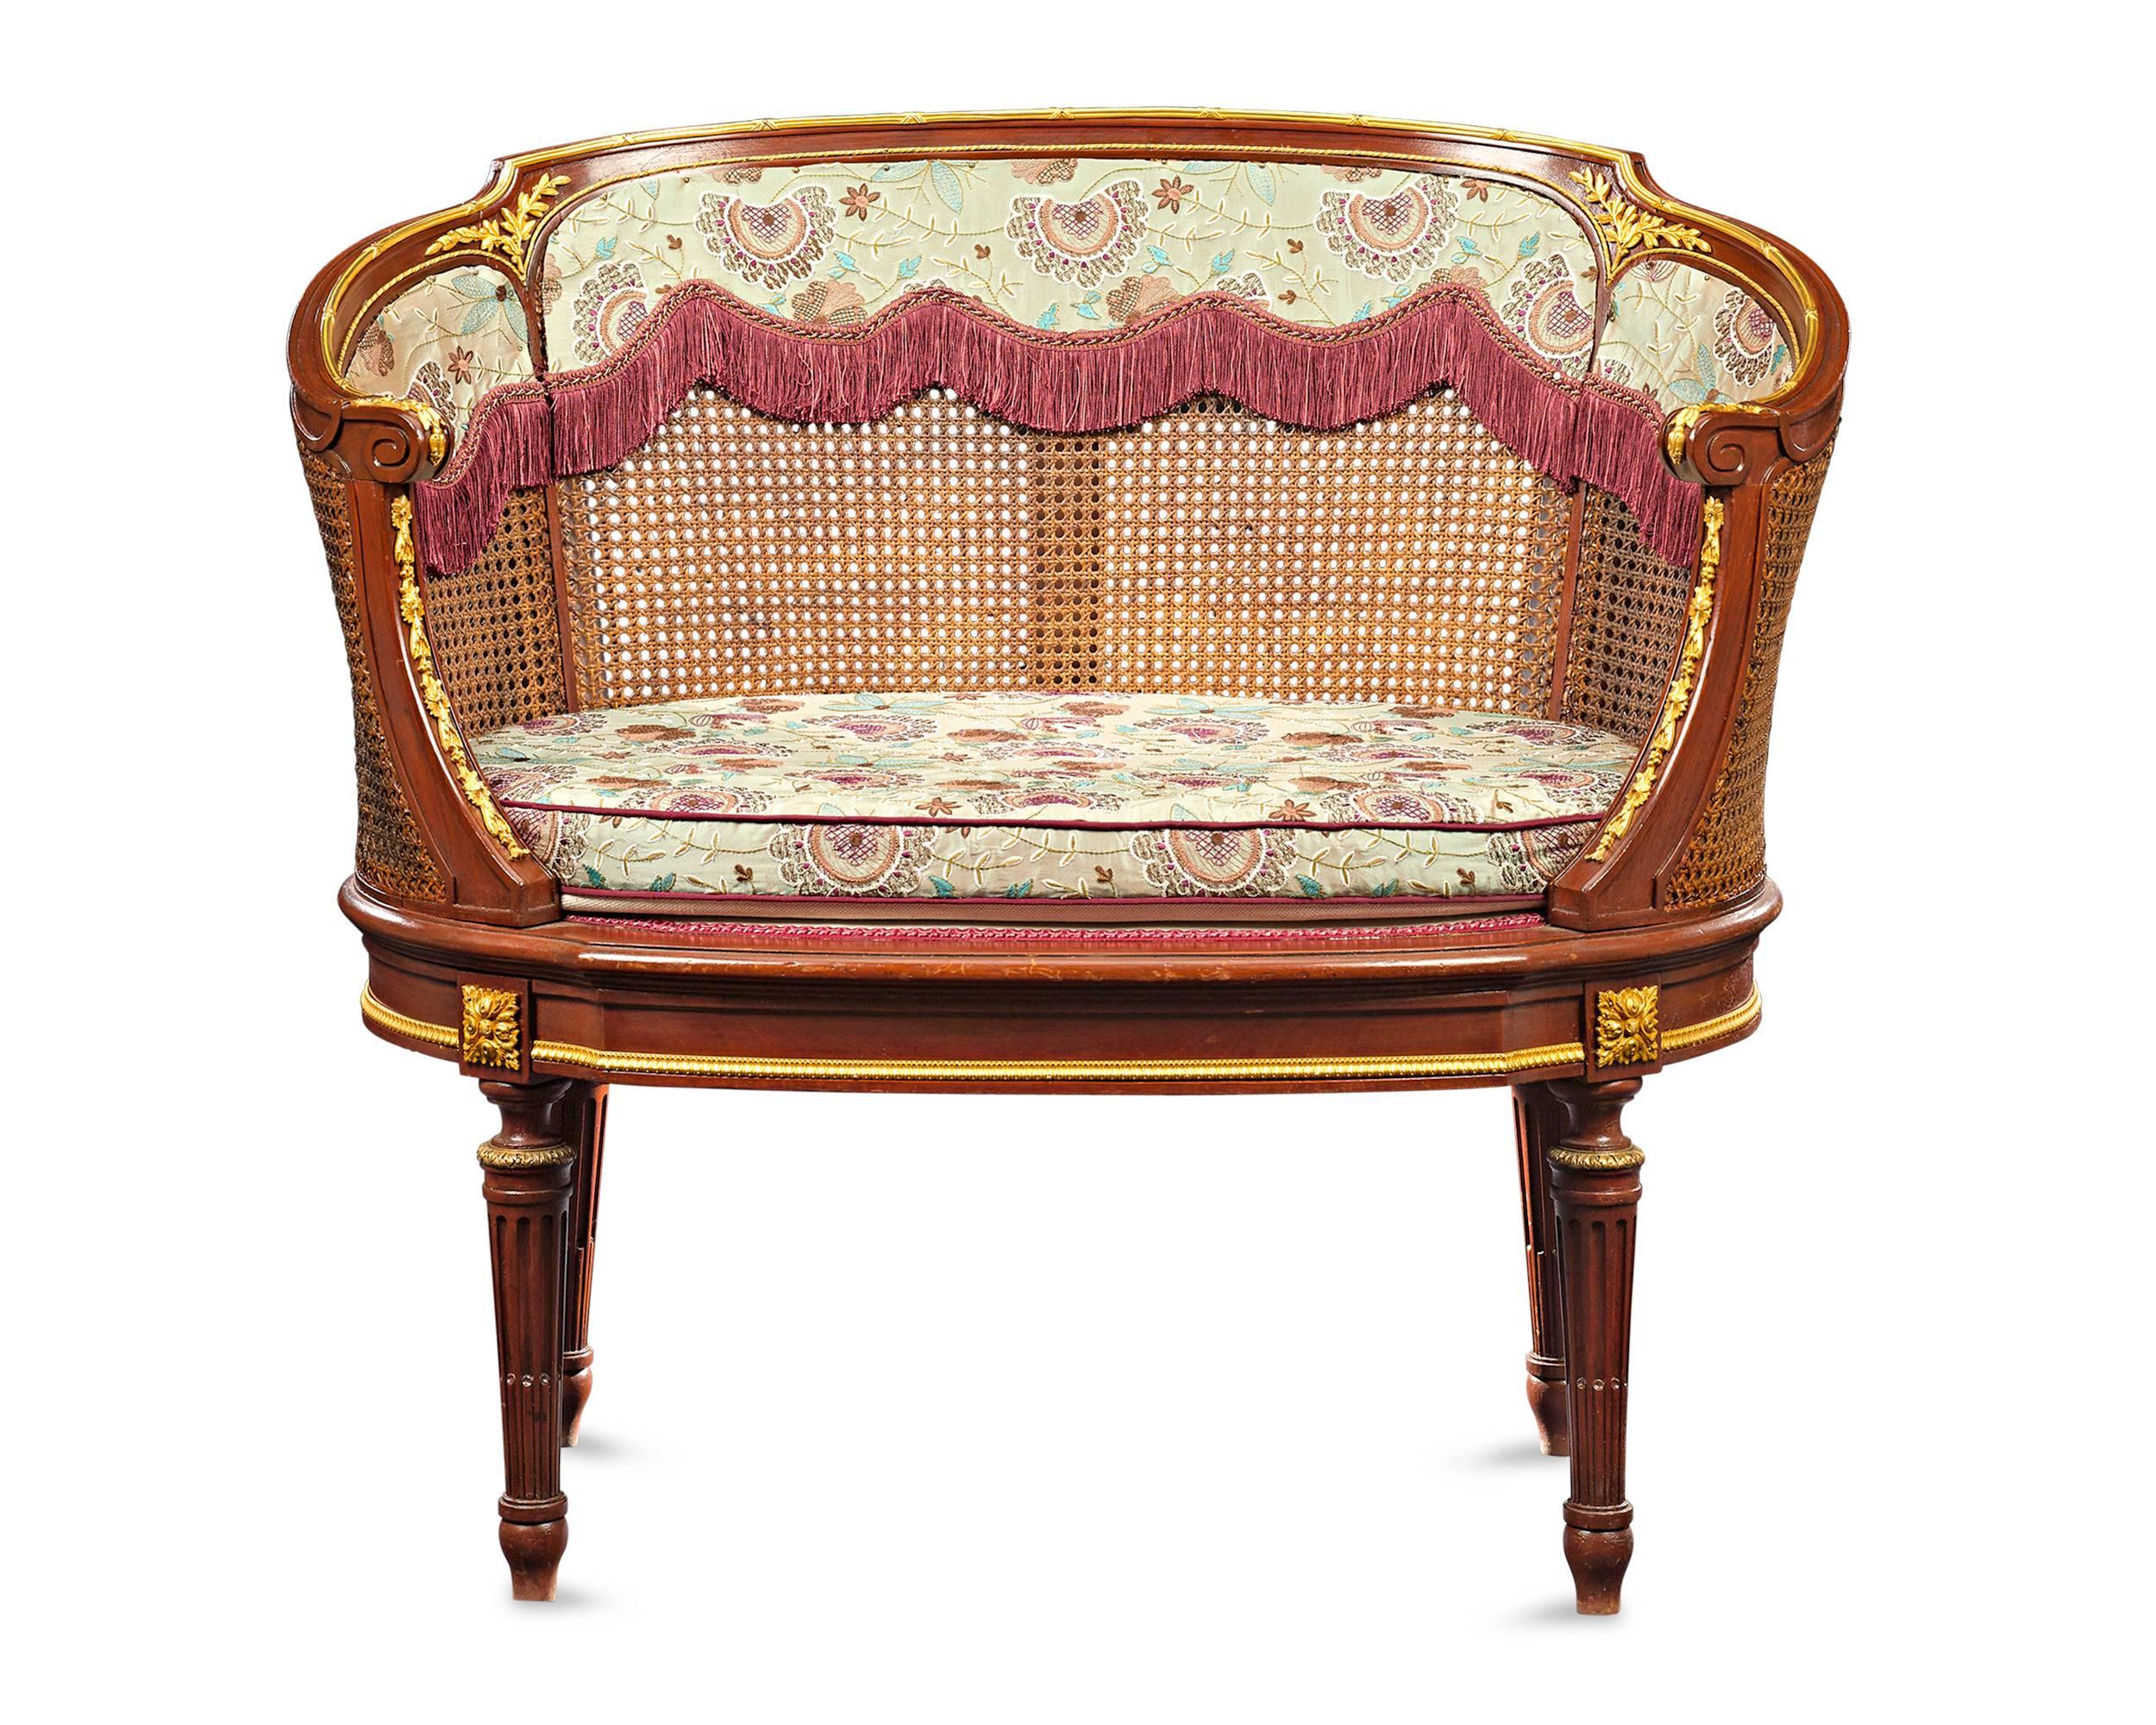 Cette magnifique paire de banquettes françaises du XIXe siècle capture l'esprit du style Louis XV. Ces chaises polyvalentes ont délicatement été réalisées avec des dossiers de sièges doubles en rotin gracieusement incurvés, tandis que des éléments